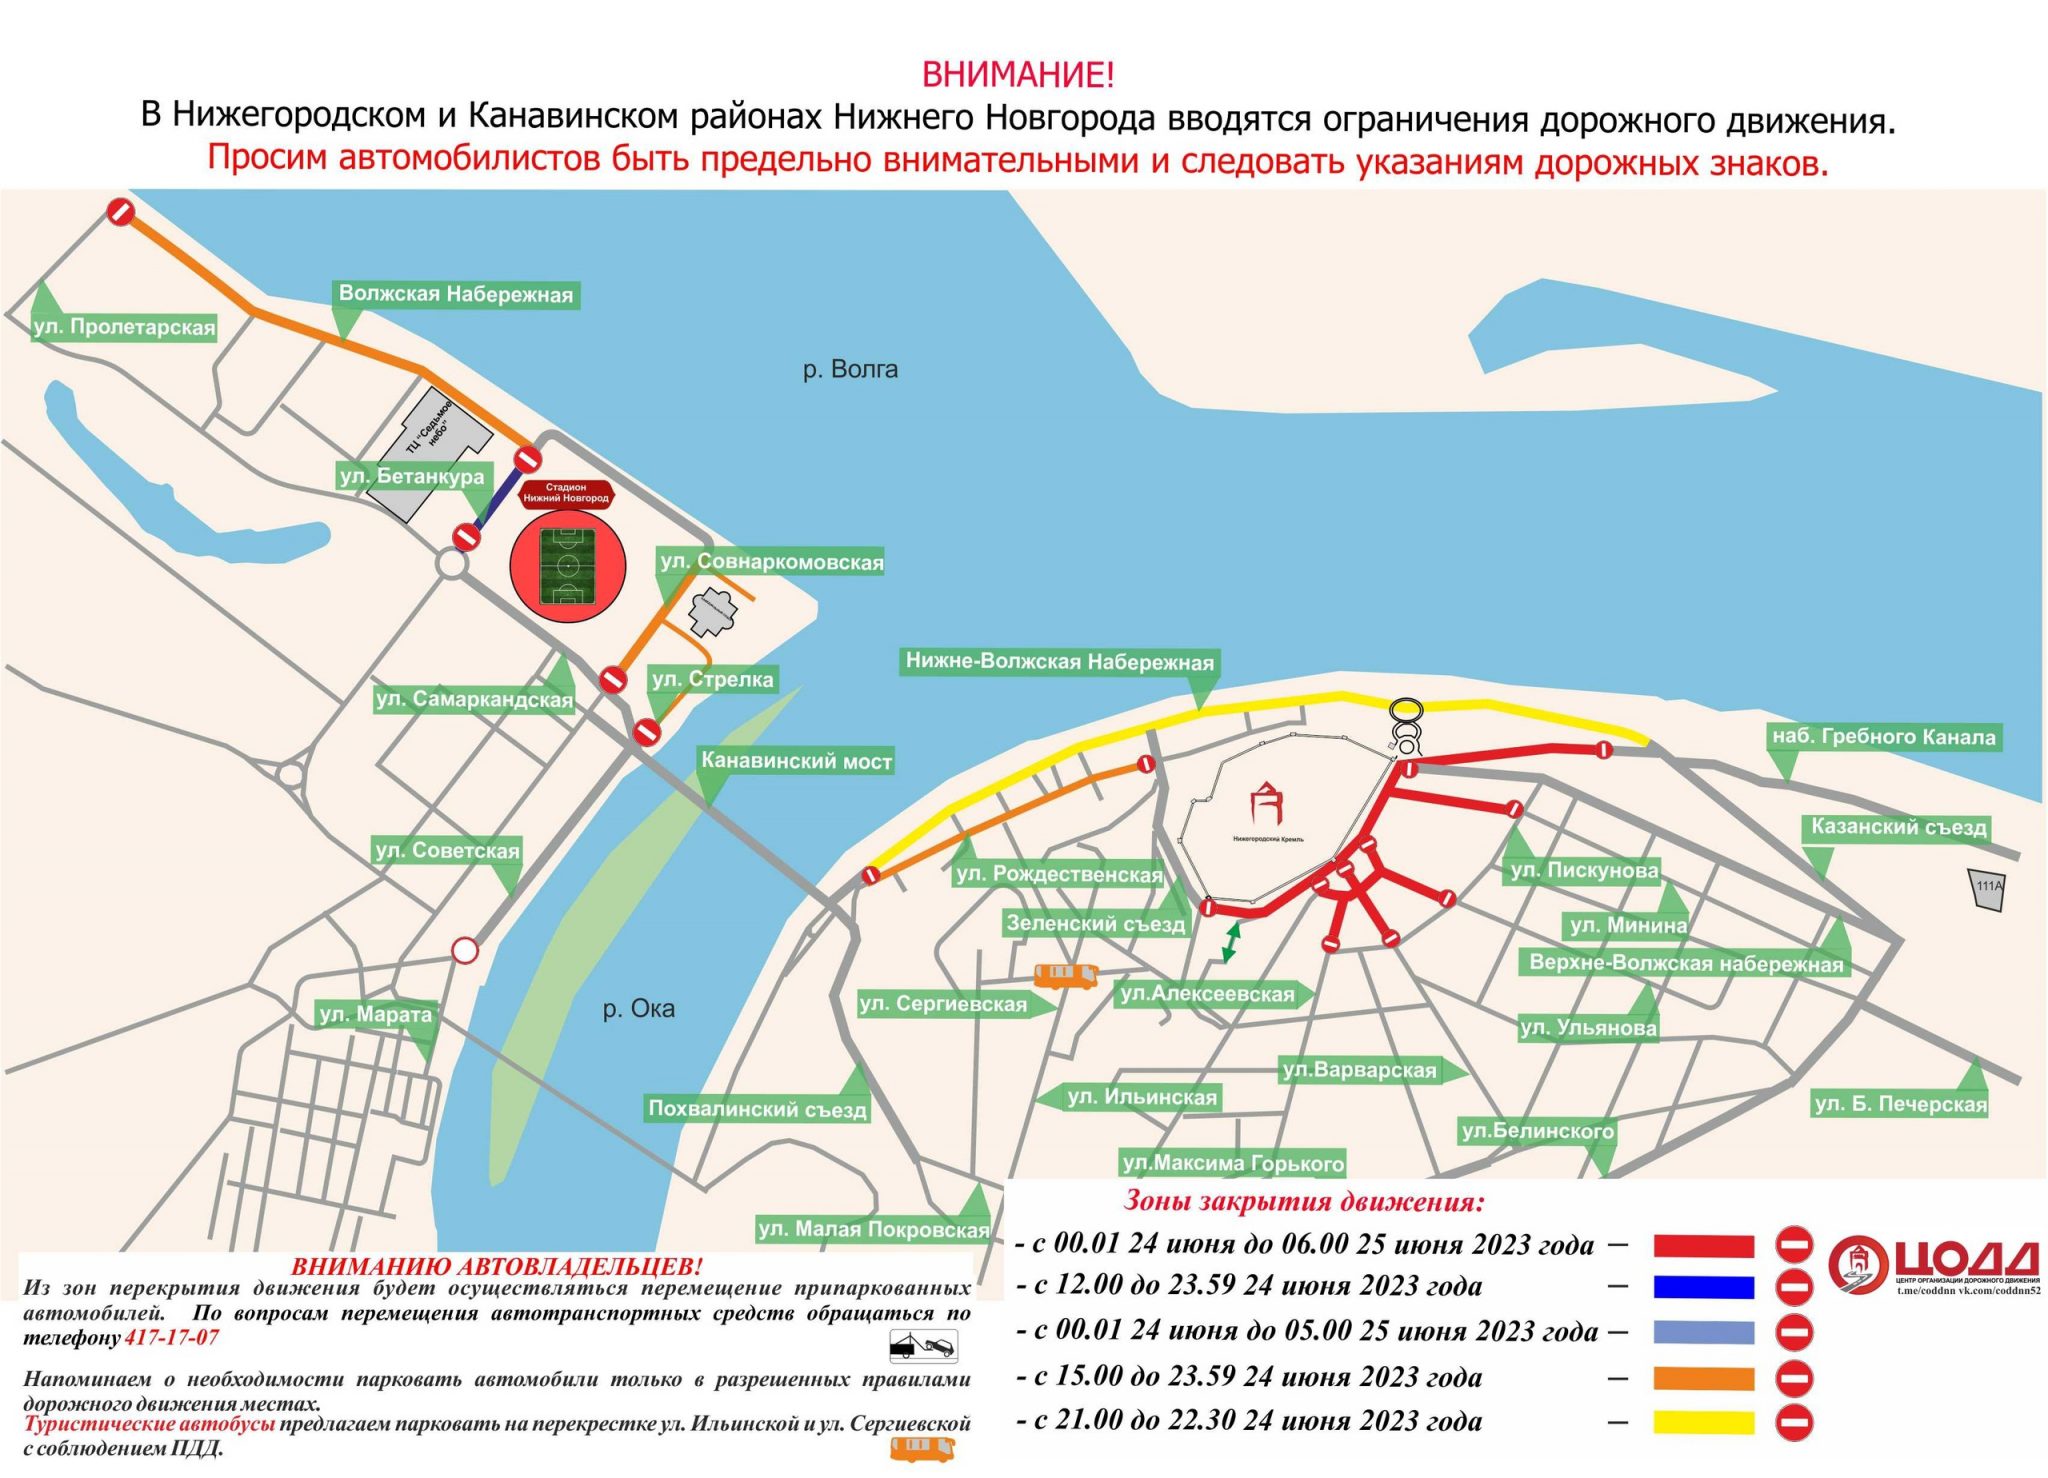 25 июня 2023. Перекрытие движения. Карта Нижнего Новгорода 2023 года. Схема перекрытия городских дорог. Перекрытие дорог 24 июня 2023.